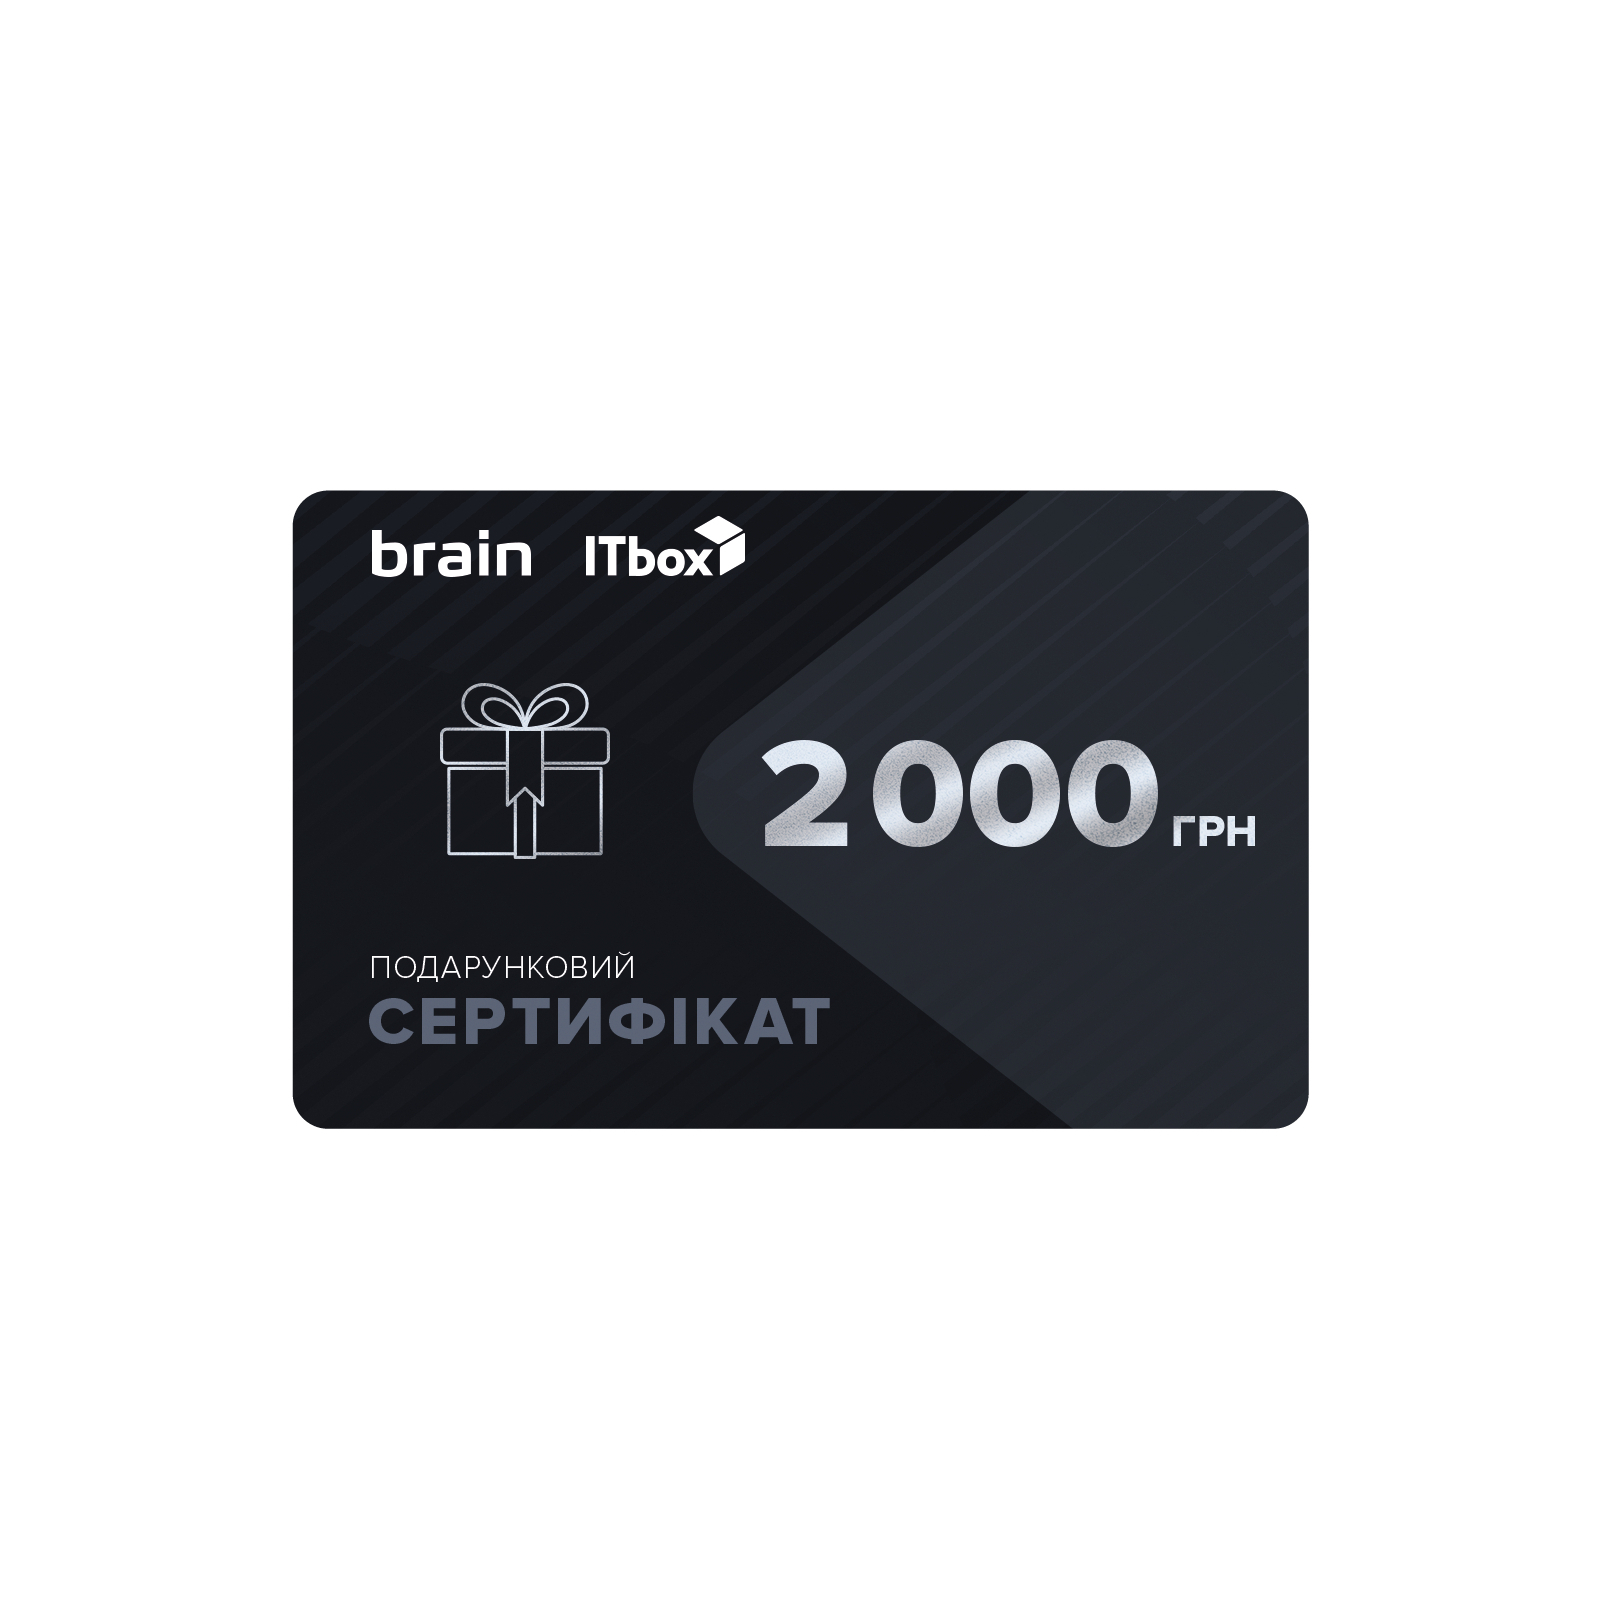 Подарочный сертификат на 2000 грн Brain/ITbox